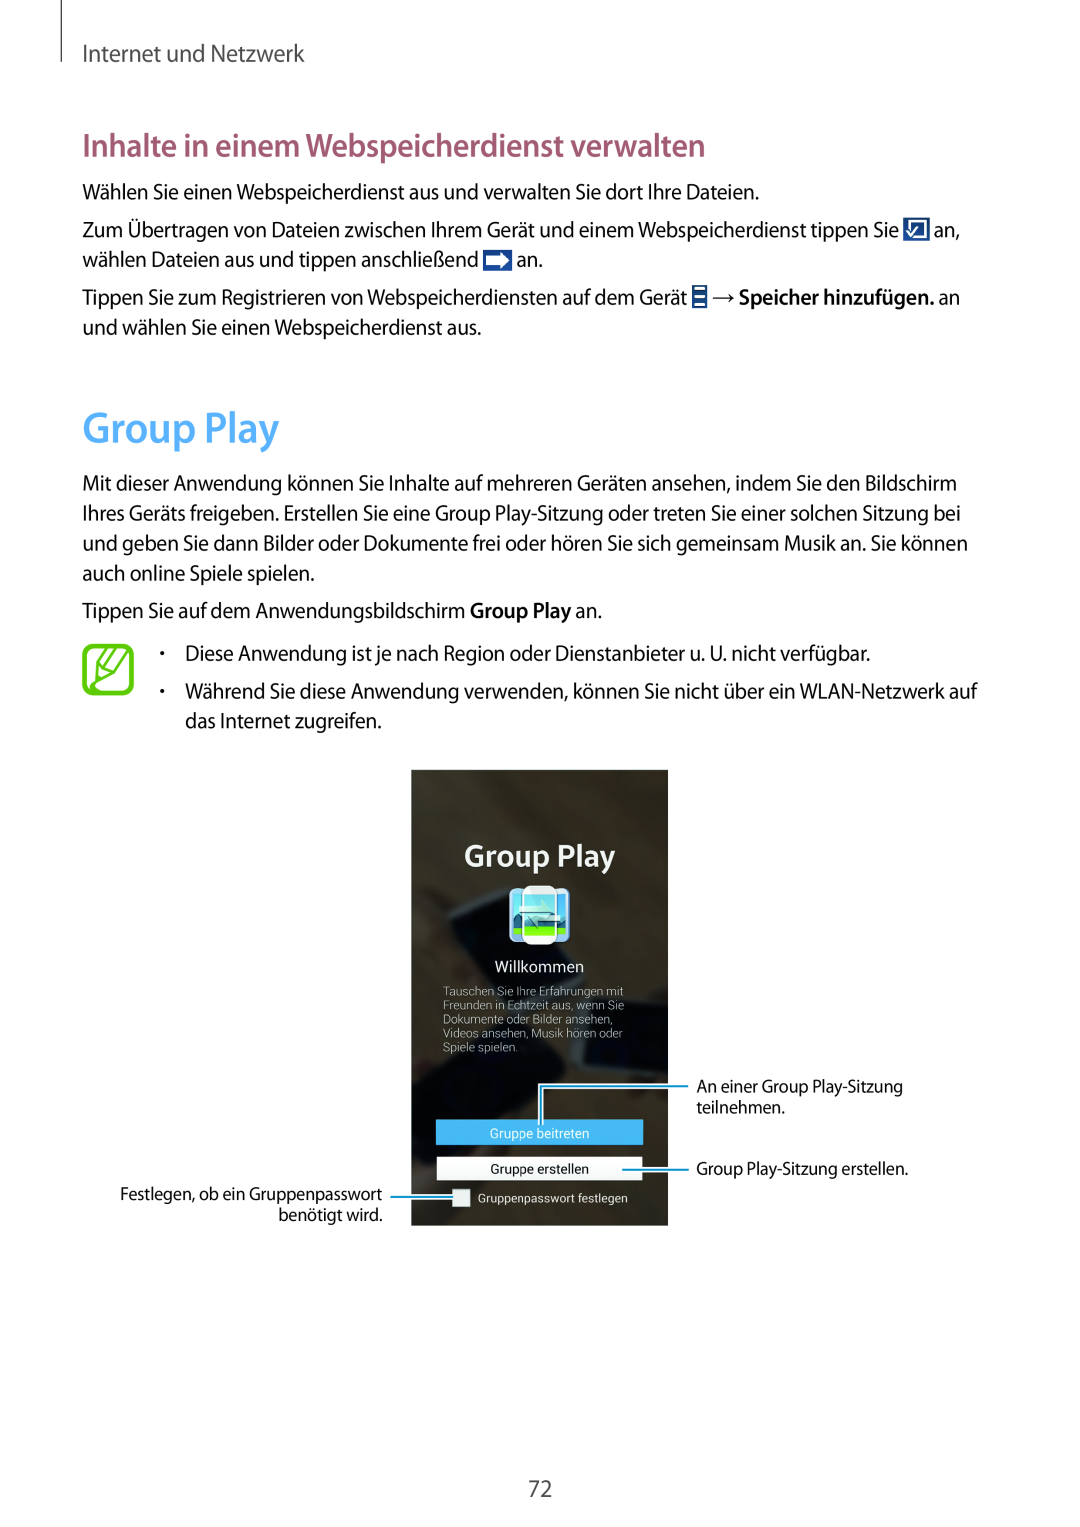 Samsung GT-I9505ZKATCL, GT-I9505ZWAEPL Group Play, Inhalte in einem Webspeicherdienst verwalten, Internet und Netzwerk 